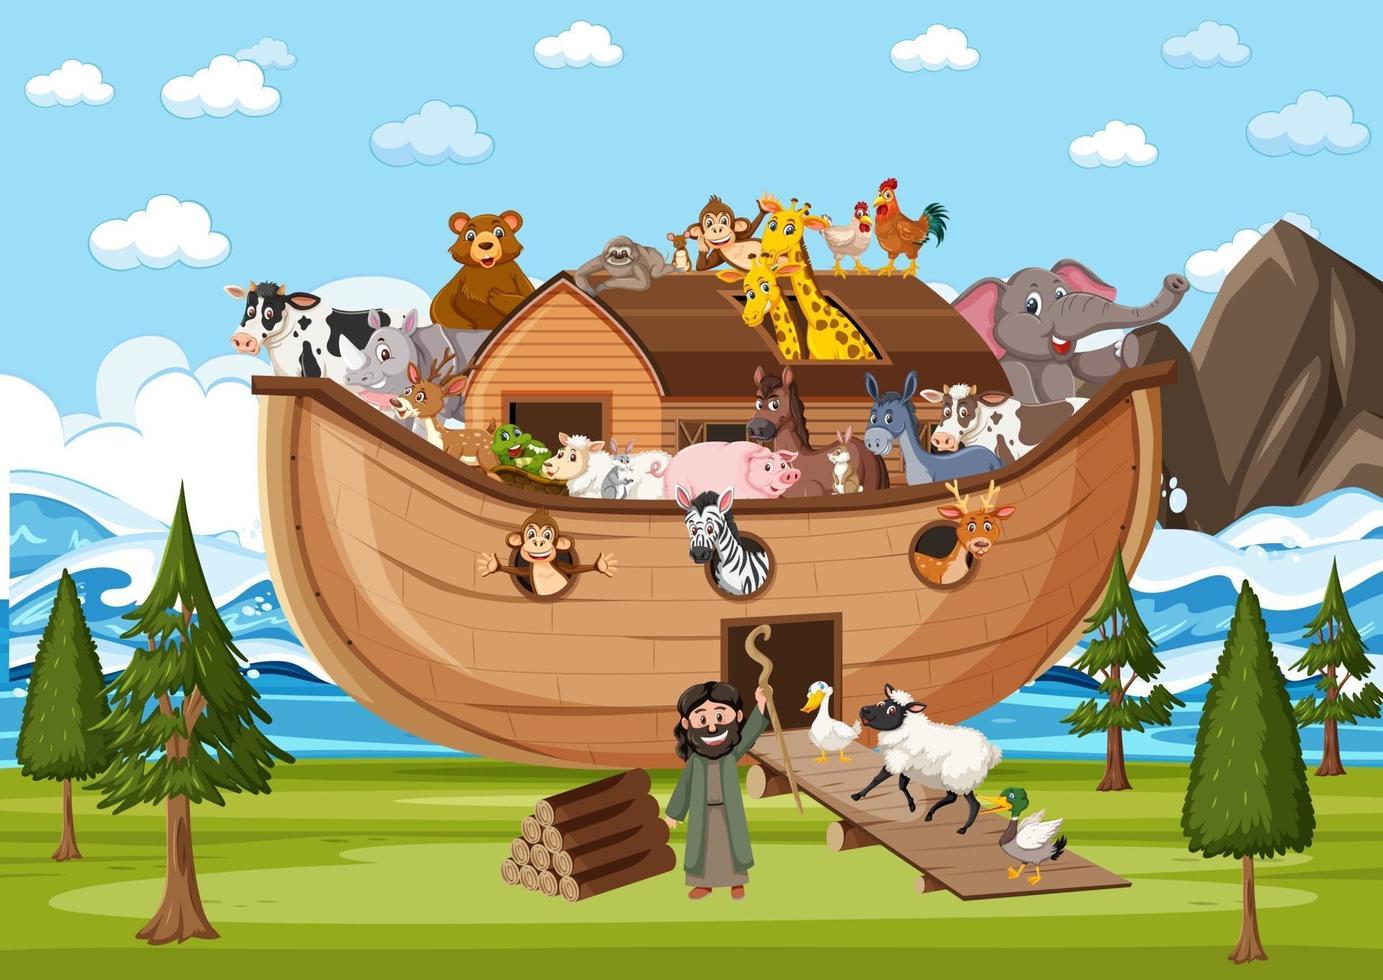 Animals on Noah's ark in the ocean scene vector